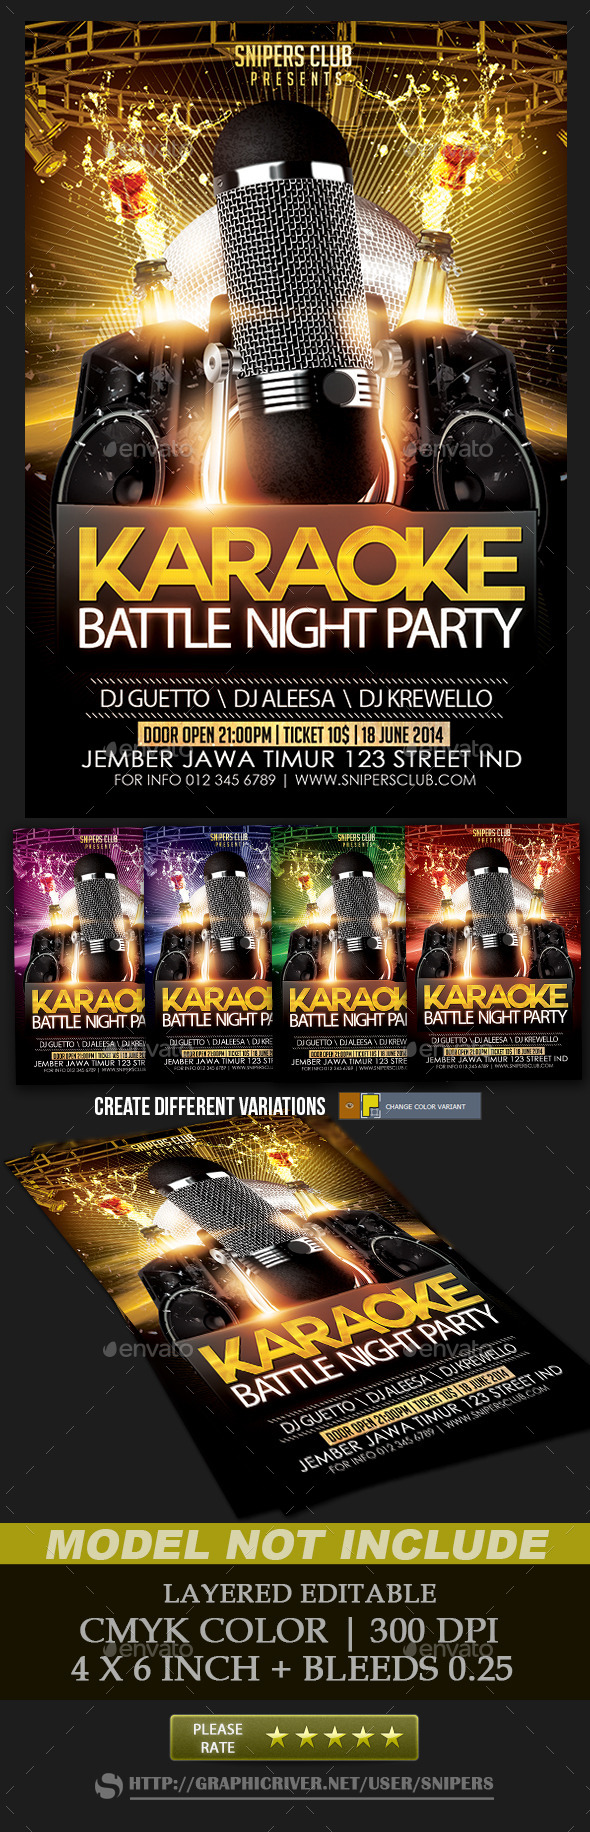 Karaoke Party Online Battle